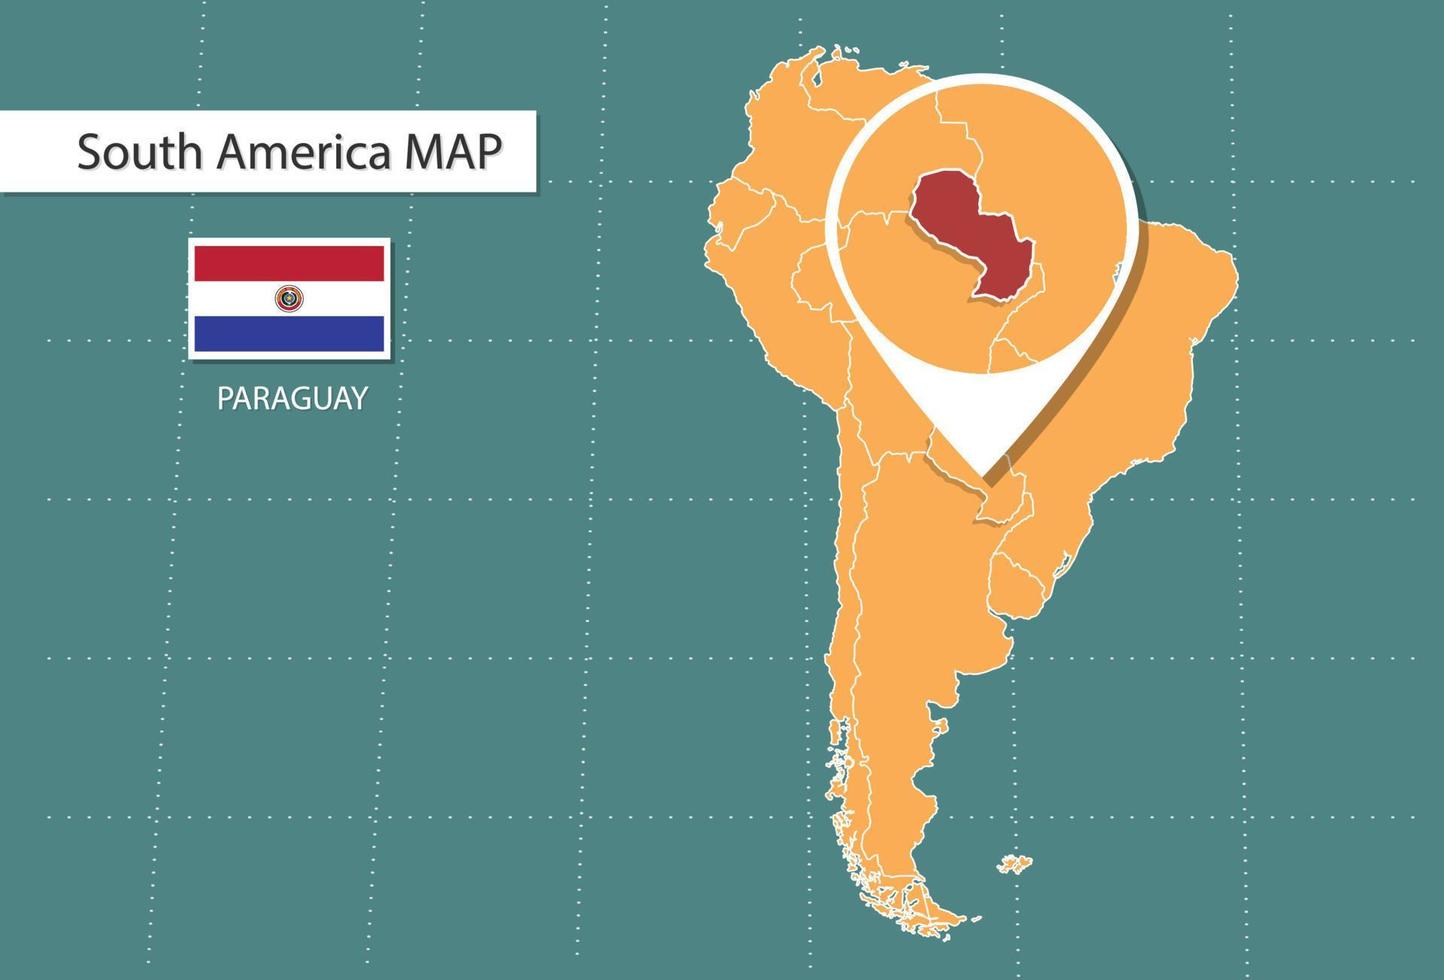 paraguay Karta i Amerika zoom version, ikoner som visar paraguay plats och flaggor. vektor